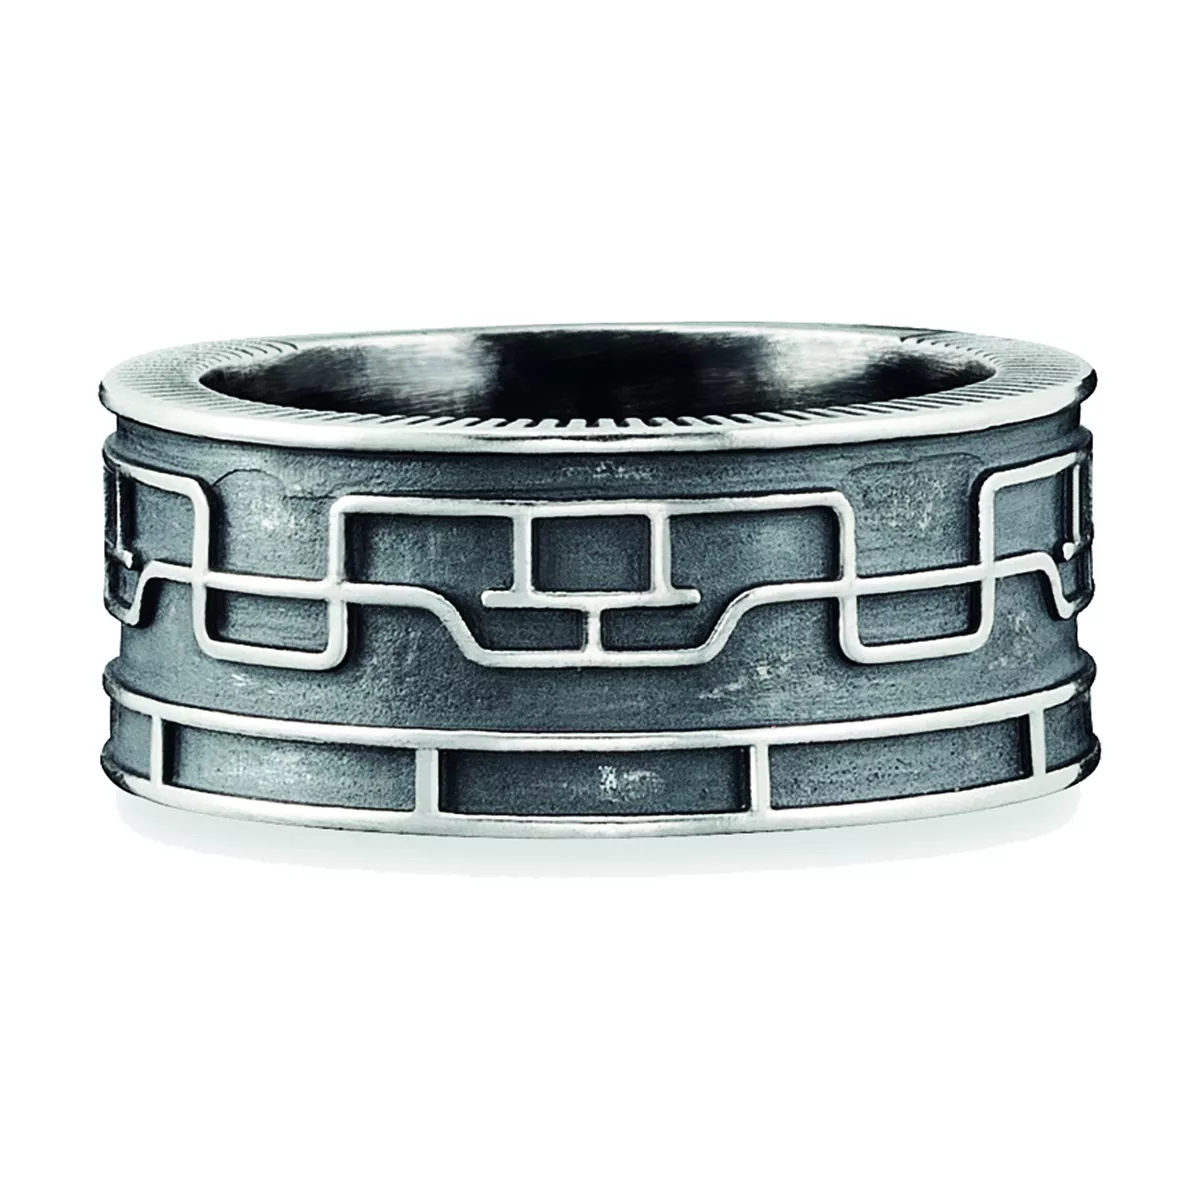 cai men Ring 925 Sterling Silber oxidiert japanisches Linien Motiv schwarz  NEU | eBay